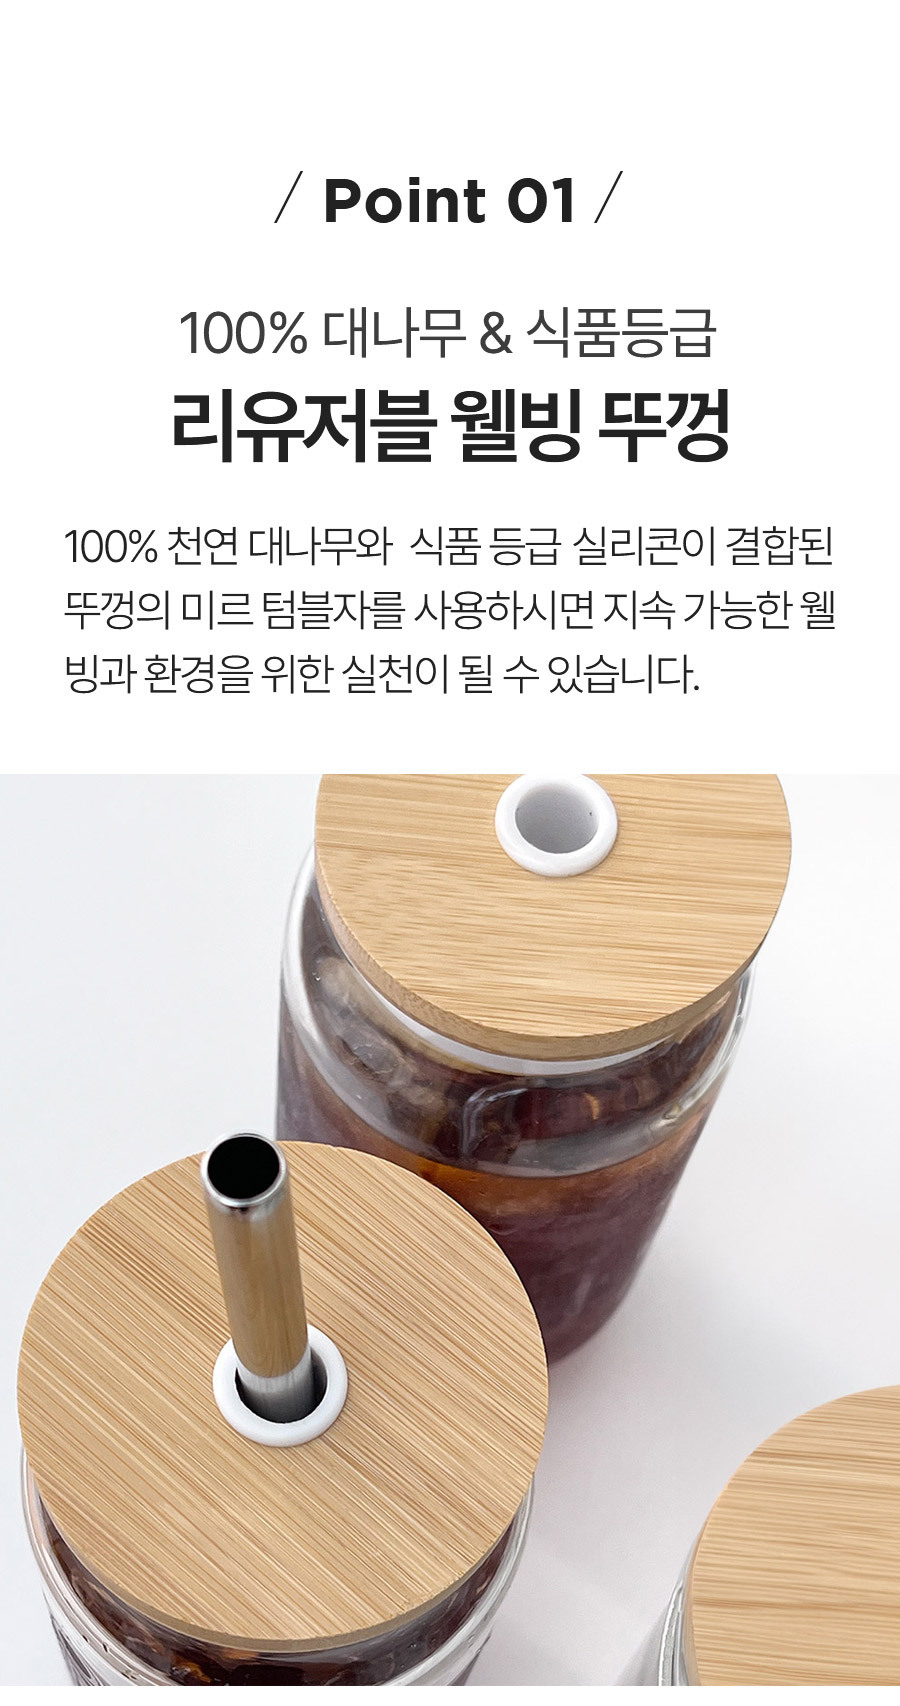 텀블자 뚜껑 대나무 소형 포인트01